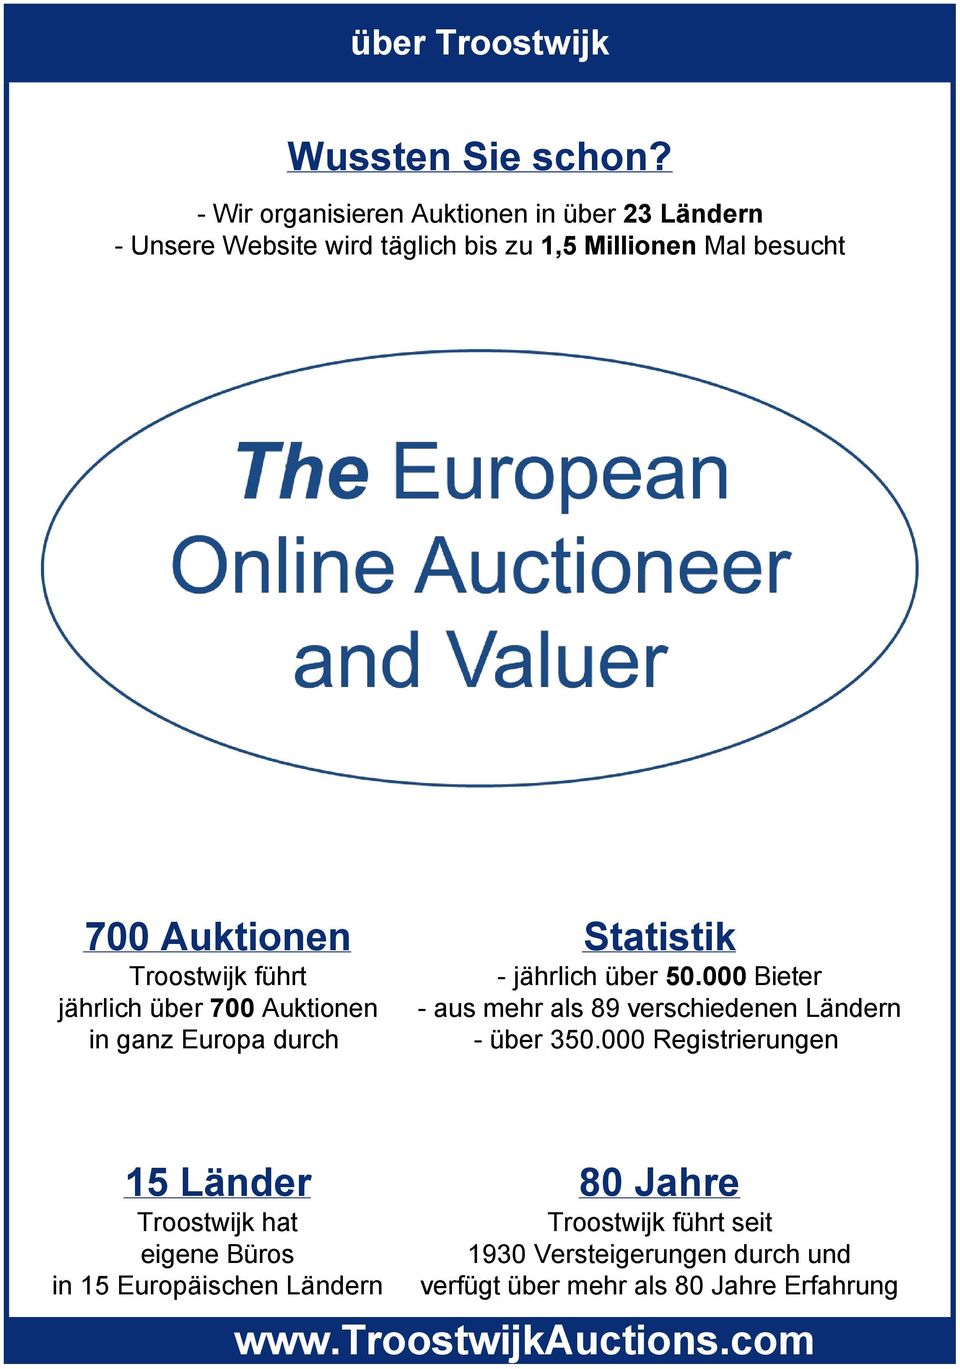 Troostwijk führt jährlich über 700 Auktionen in ganz Europa durch Statistik jährlich über 50.